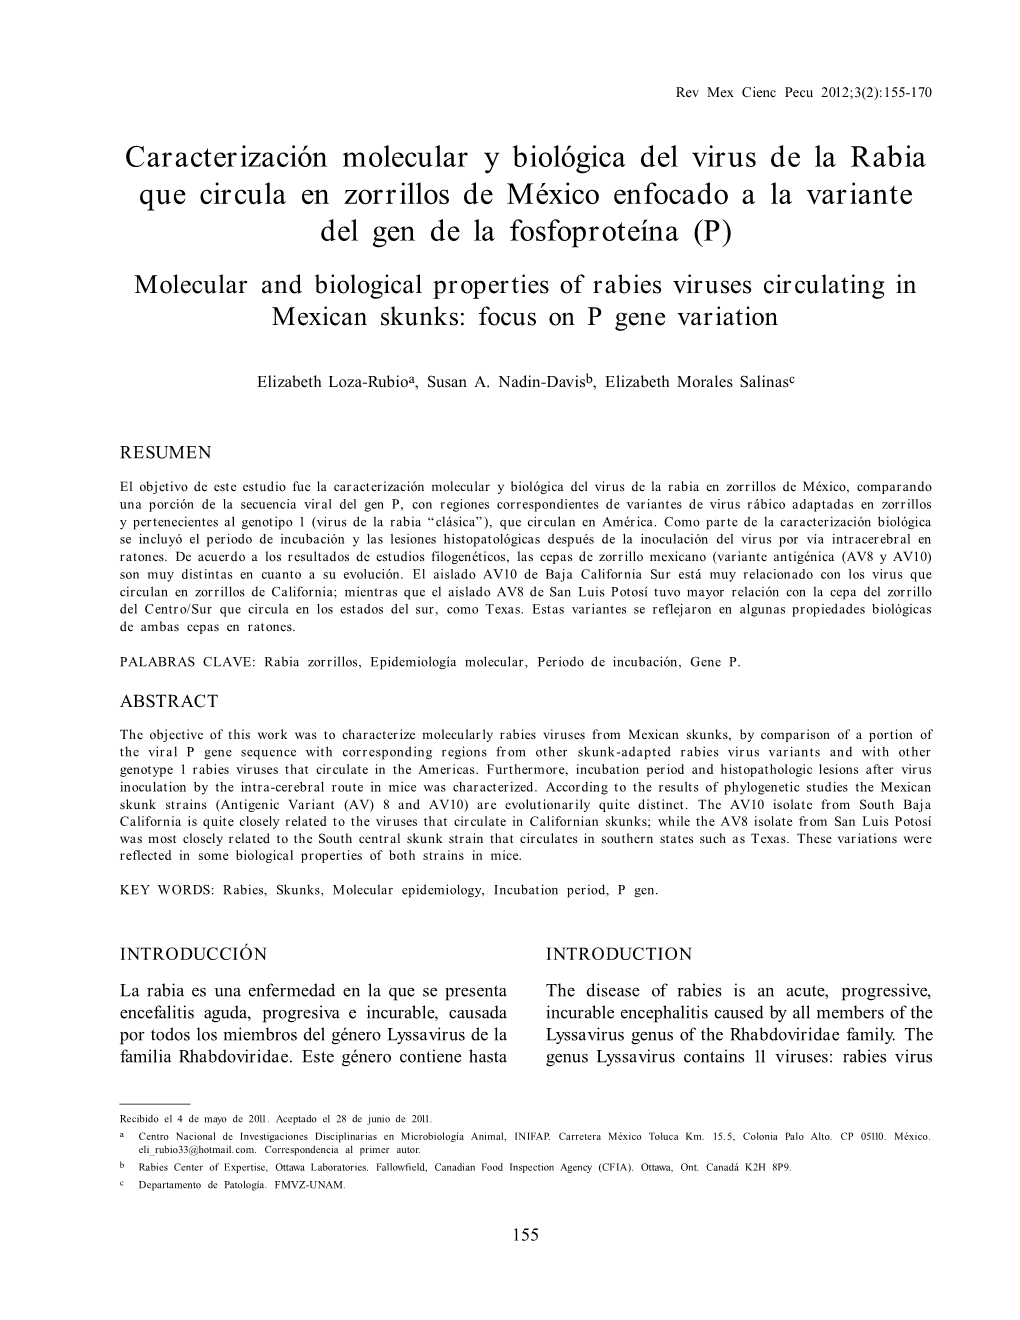 CARACTERIZACIÓN MOLECULAR Y BIOLÓGICA DEL VIRUS DE Larev RABIA Mex Cienc EN ZORRILLOS Pecu 2012;3(2):155-170